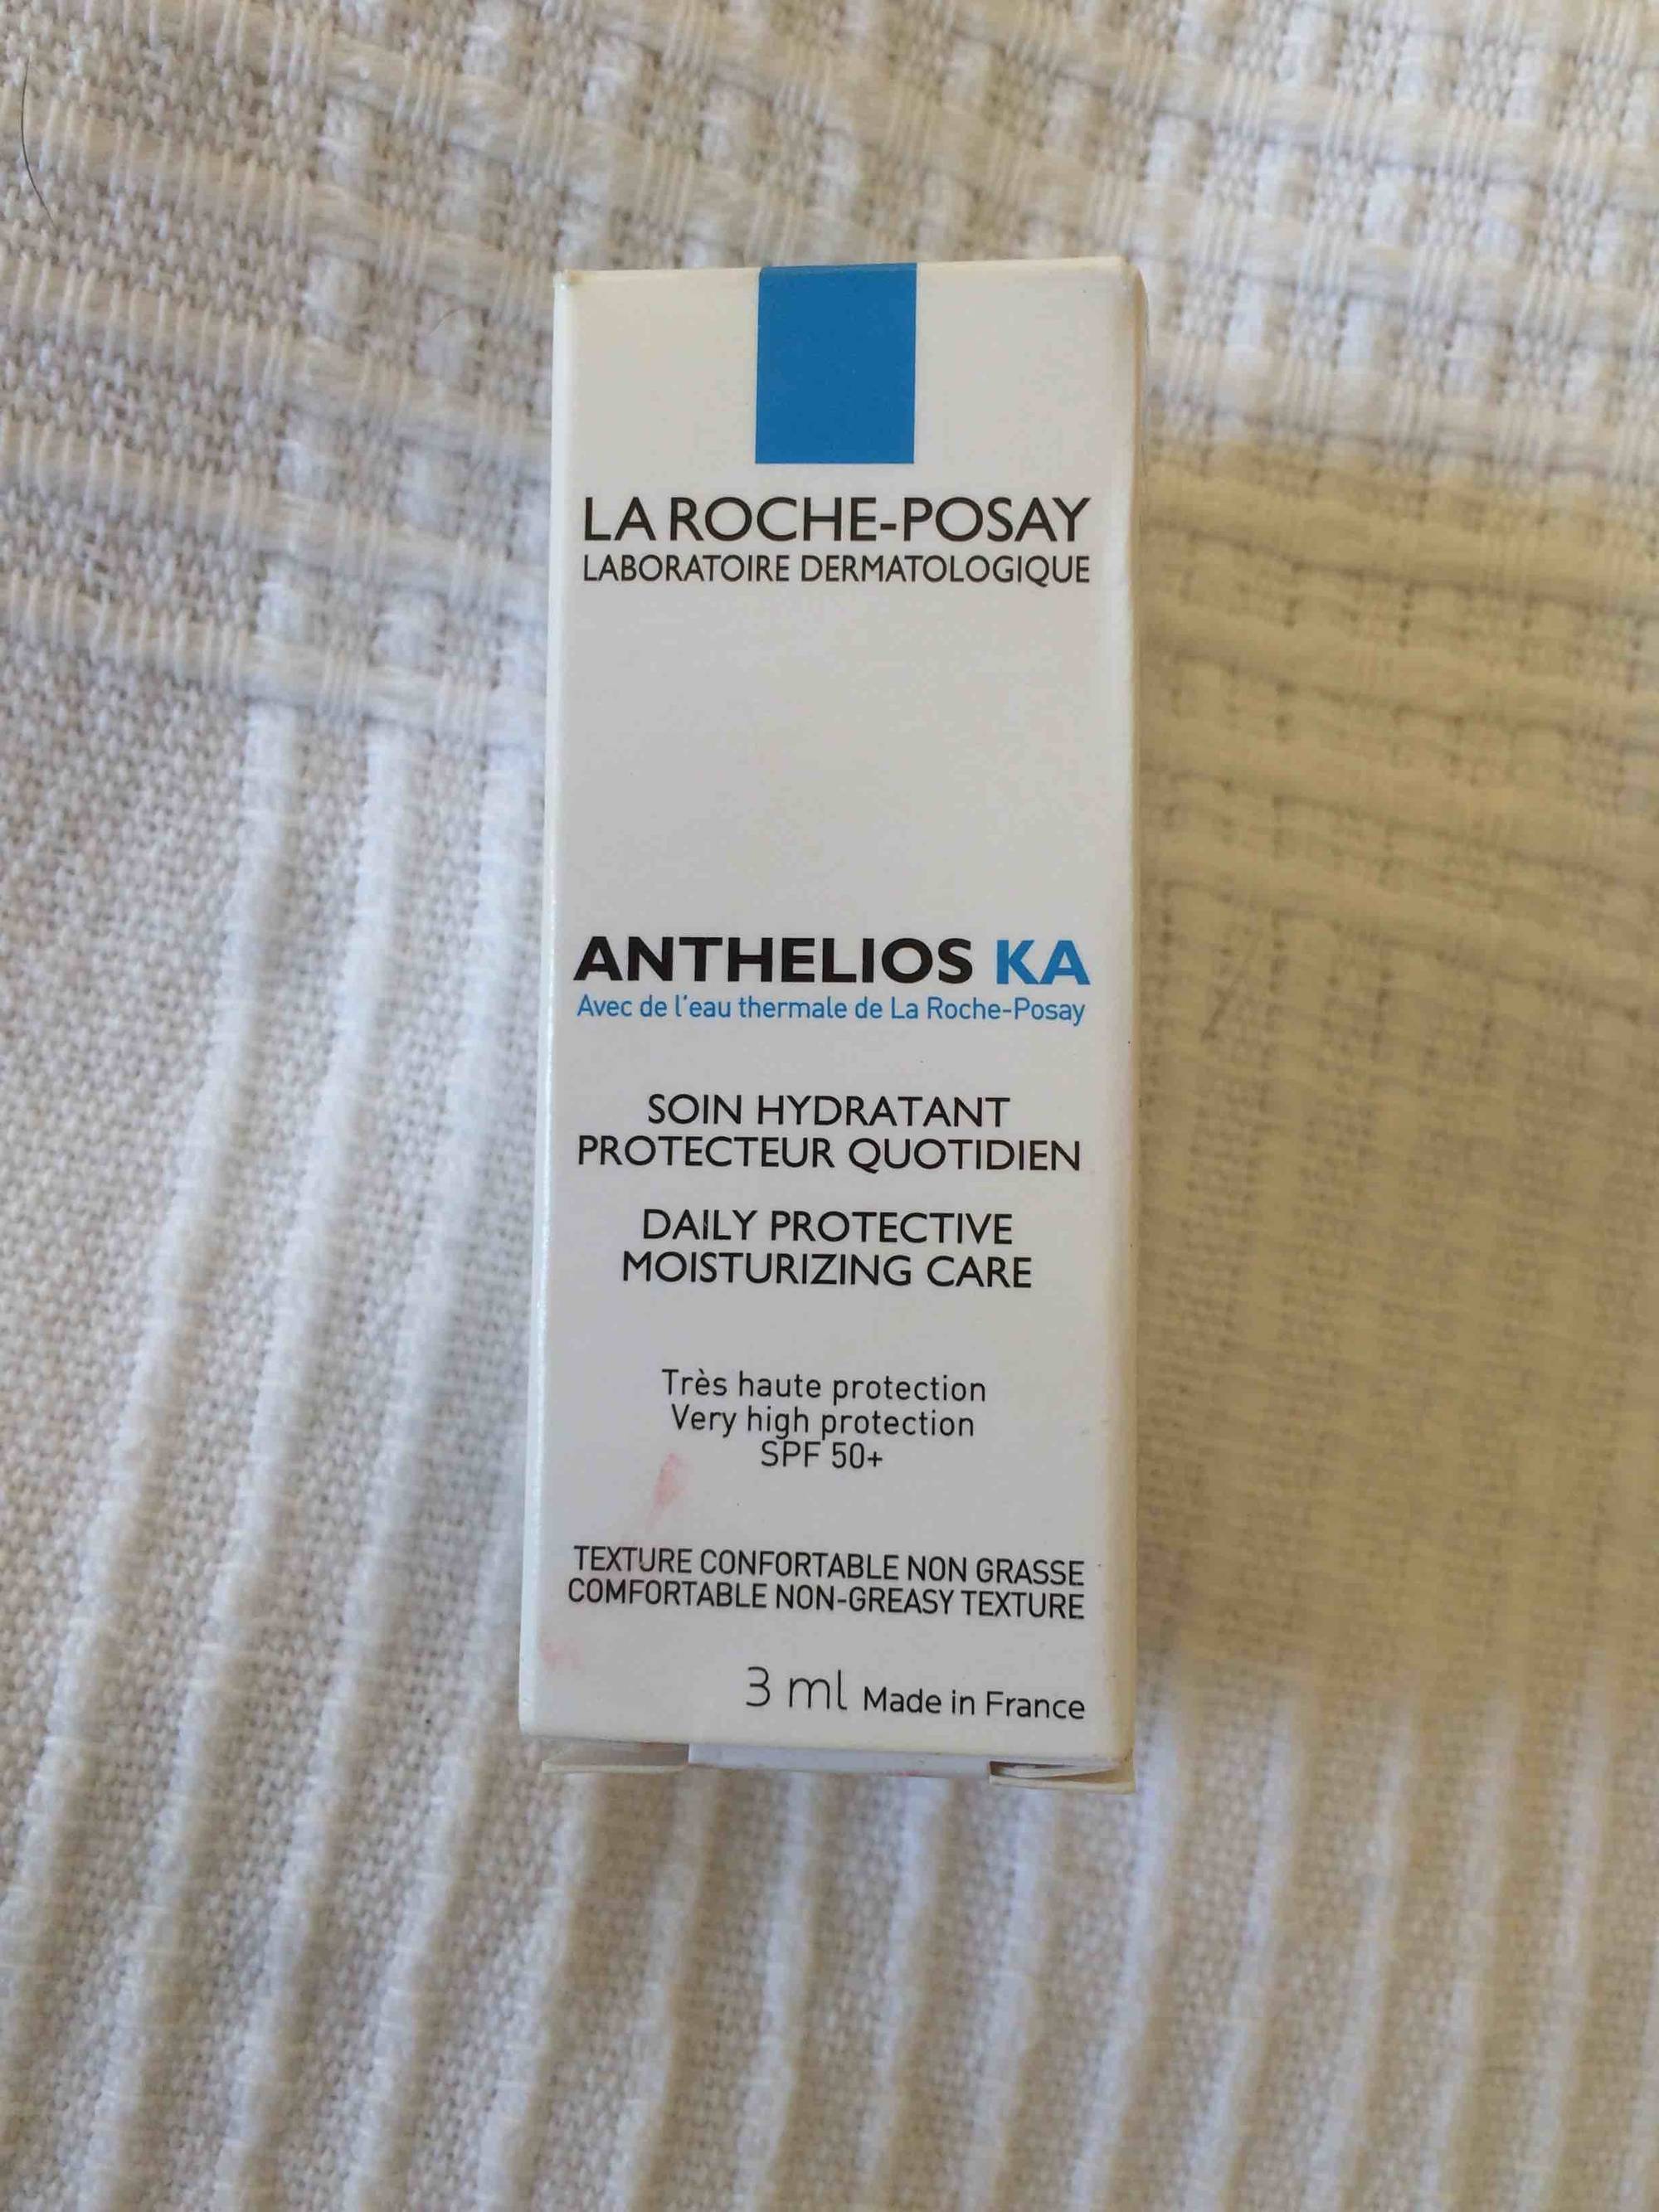 LA ROCHE-POSAY - Anthelios Ka - Soin hydratant protecteur quotidien